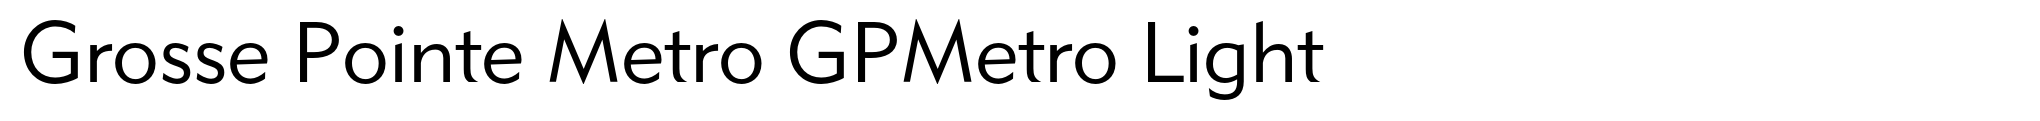 Grosse Pointe Metro GPMetro Light image